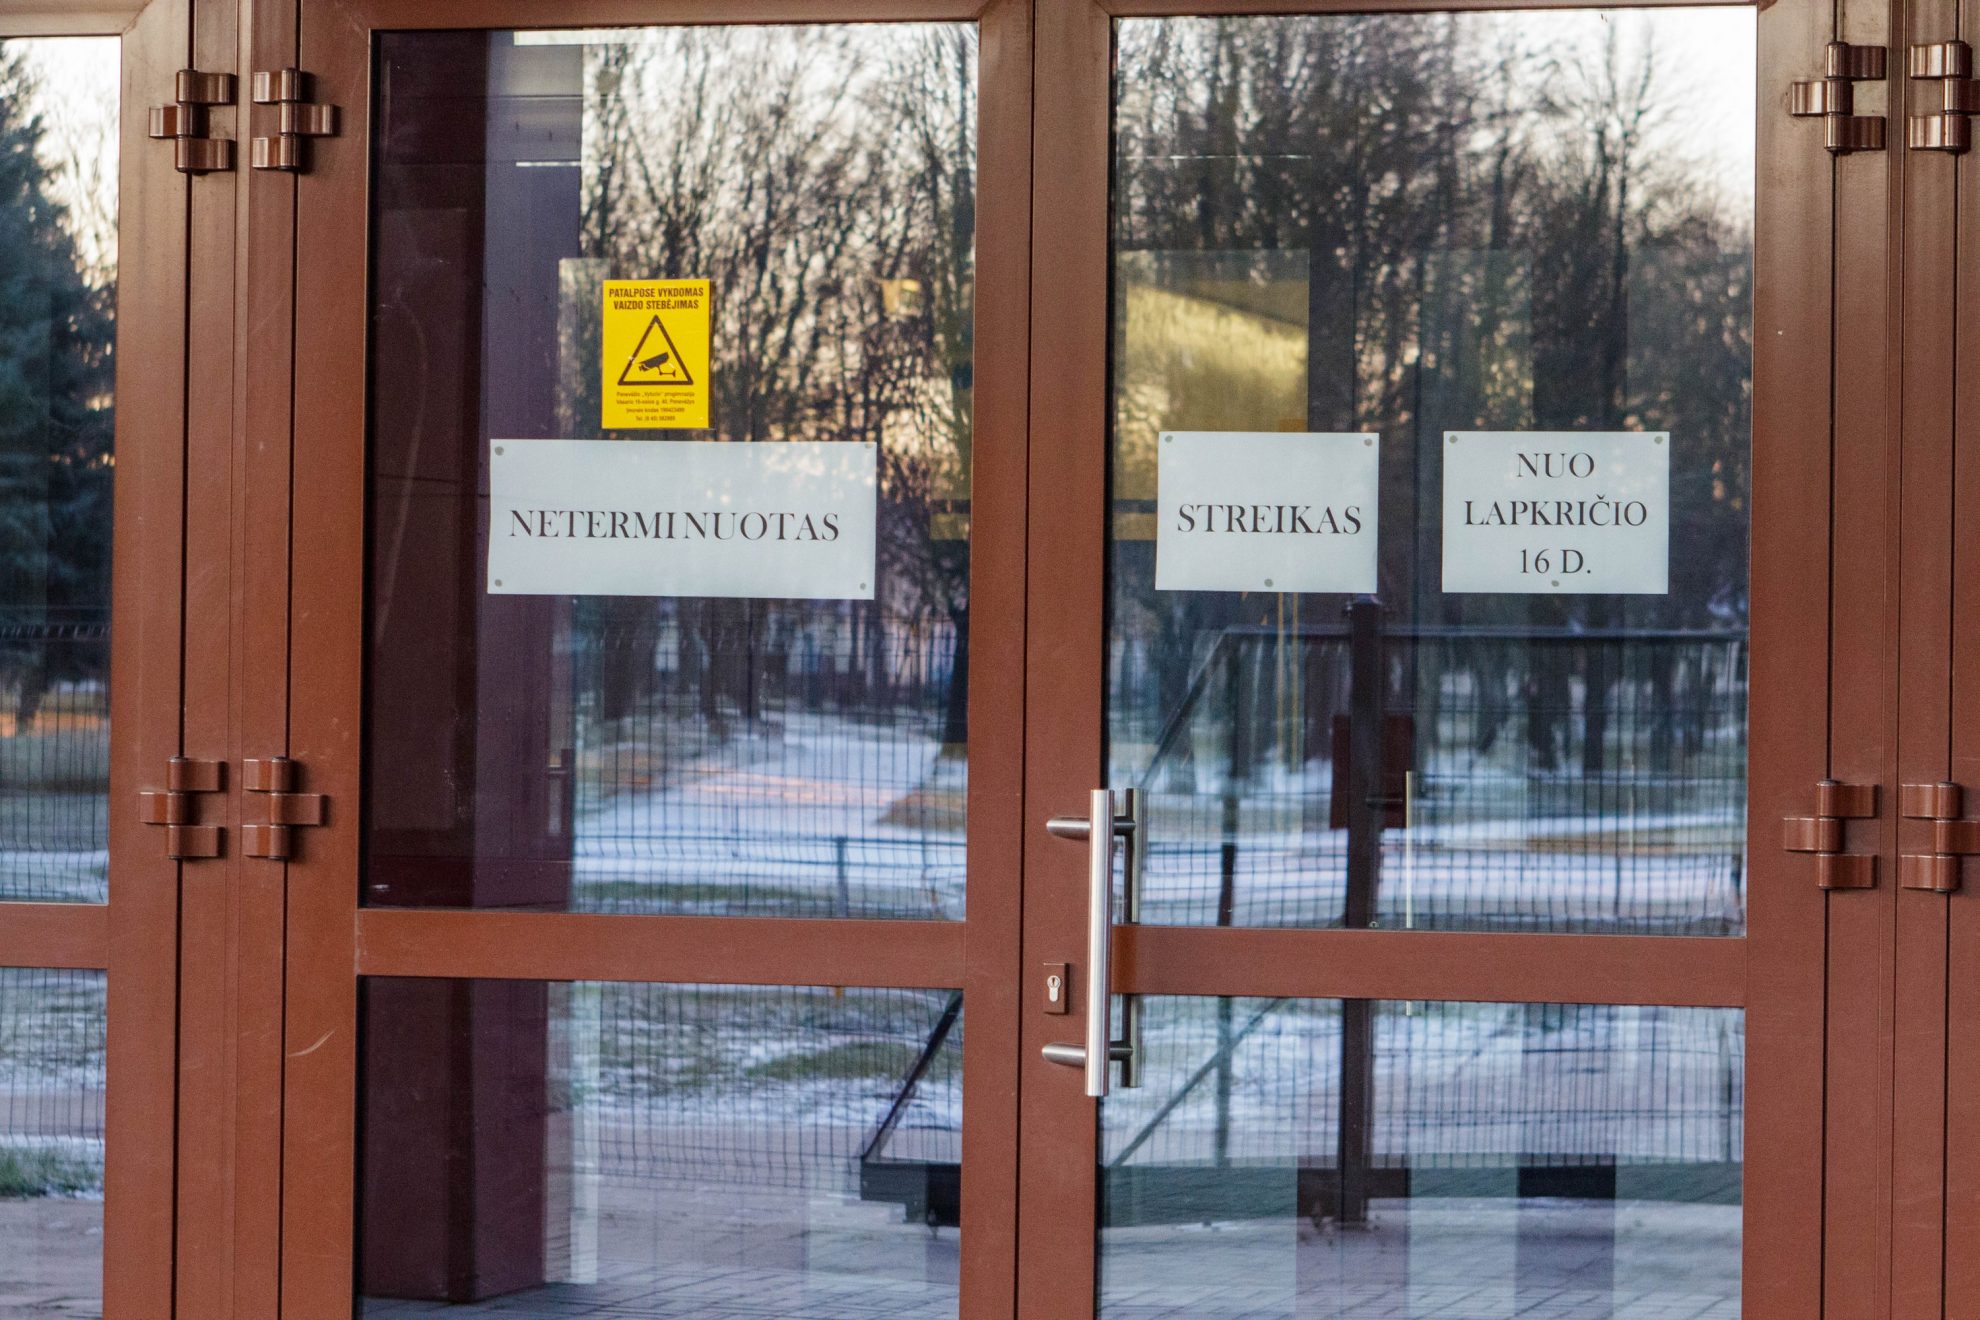 Švietimo ir mokslo ministerijoje (ŠMM) nakvoję keliasdešimt streikuojančių mokytojų ketvirtadienį laukia, kol ministrė Jurgita Petrauskienė pradės derybas dėl etatinio apmokėjimo.